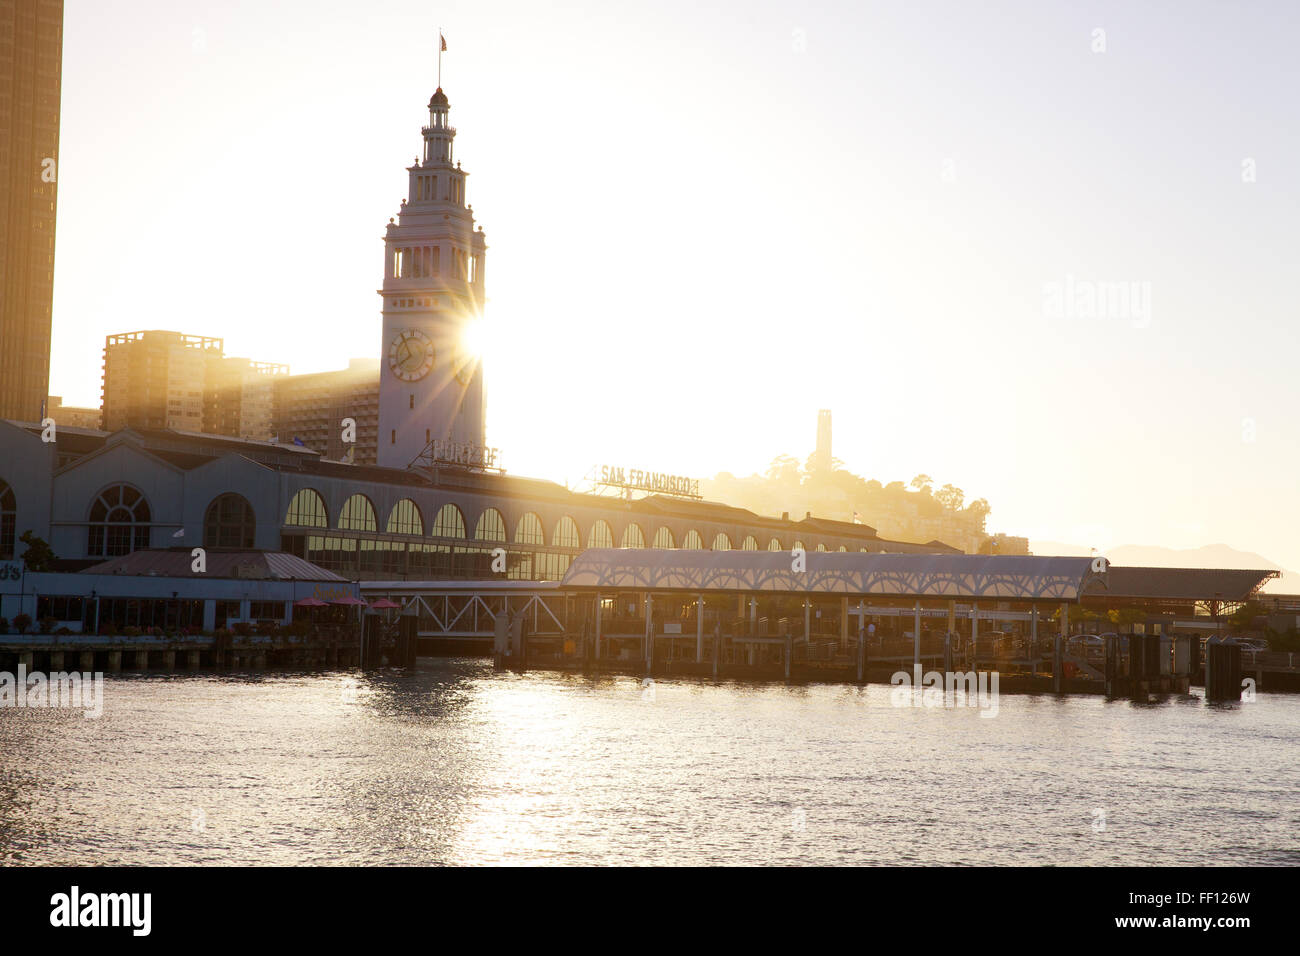 San Francisco Ferry Building sur l'Embarcadero avec le soleil qui brille derrière la tour de l'horloge a photographié de l'eau. Banque D'Images